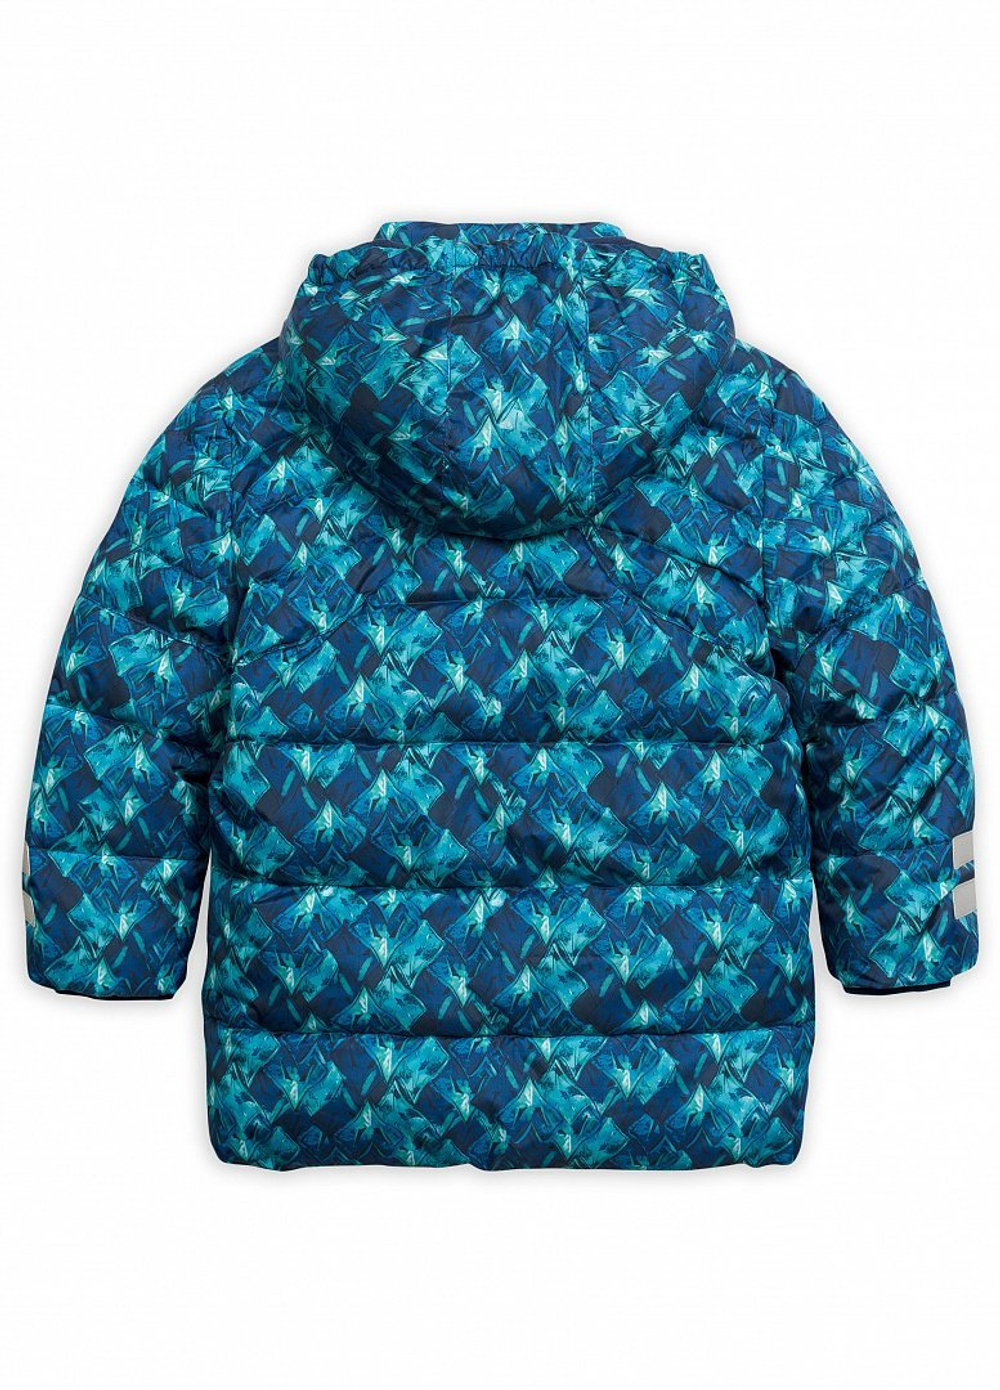 Pelican BZWW3076/1 Куртка для мальчиков "Повелитель драконов"синий